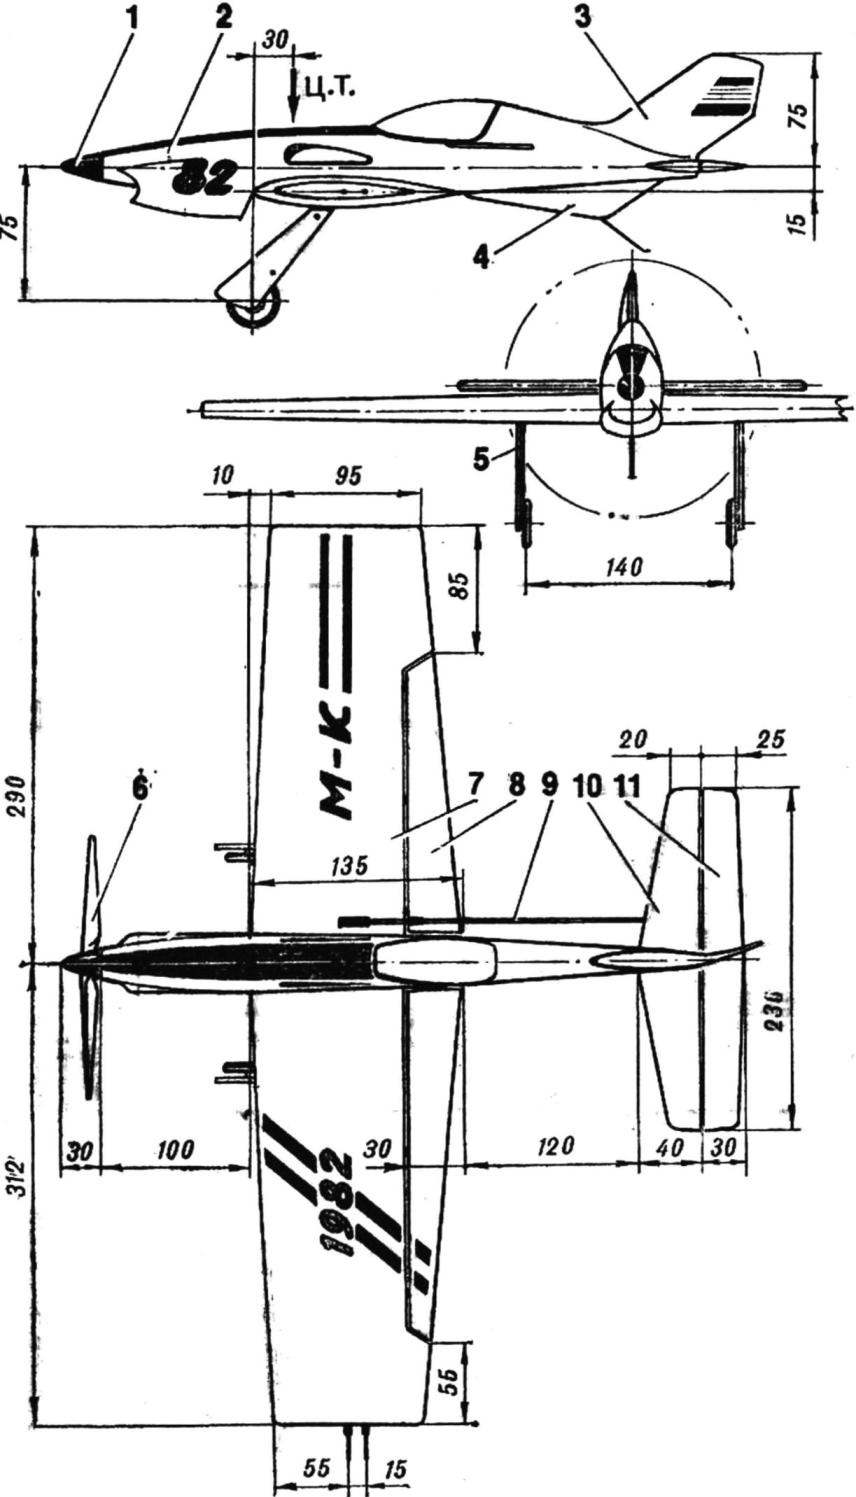 Рис. 1. Пилотажная модель с электродвигателем